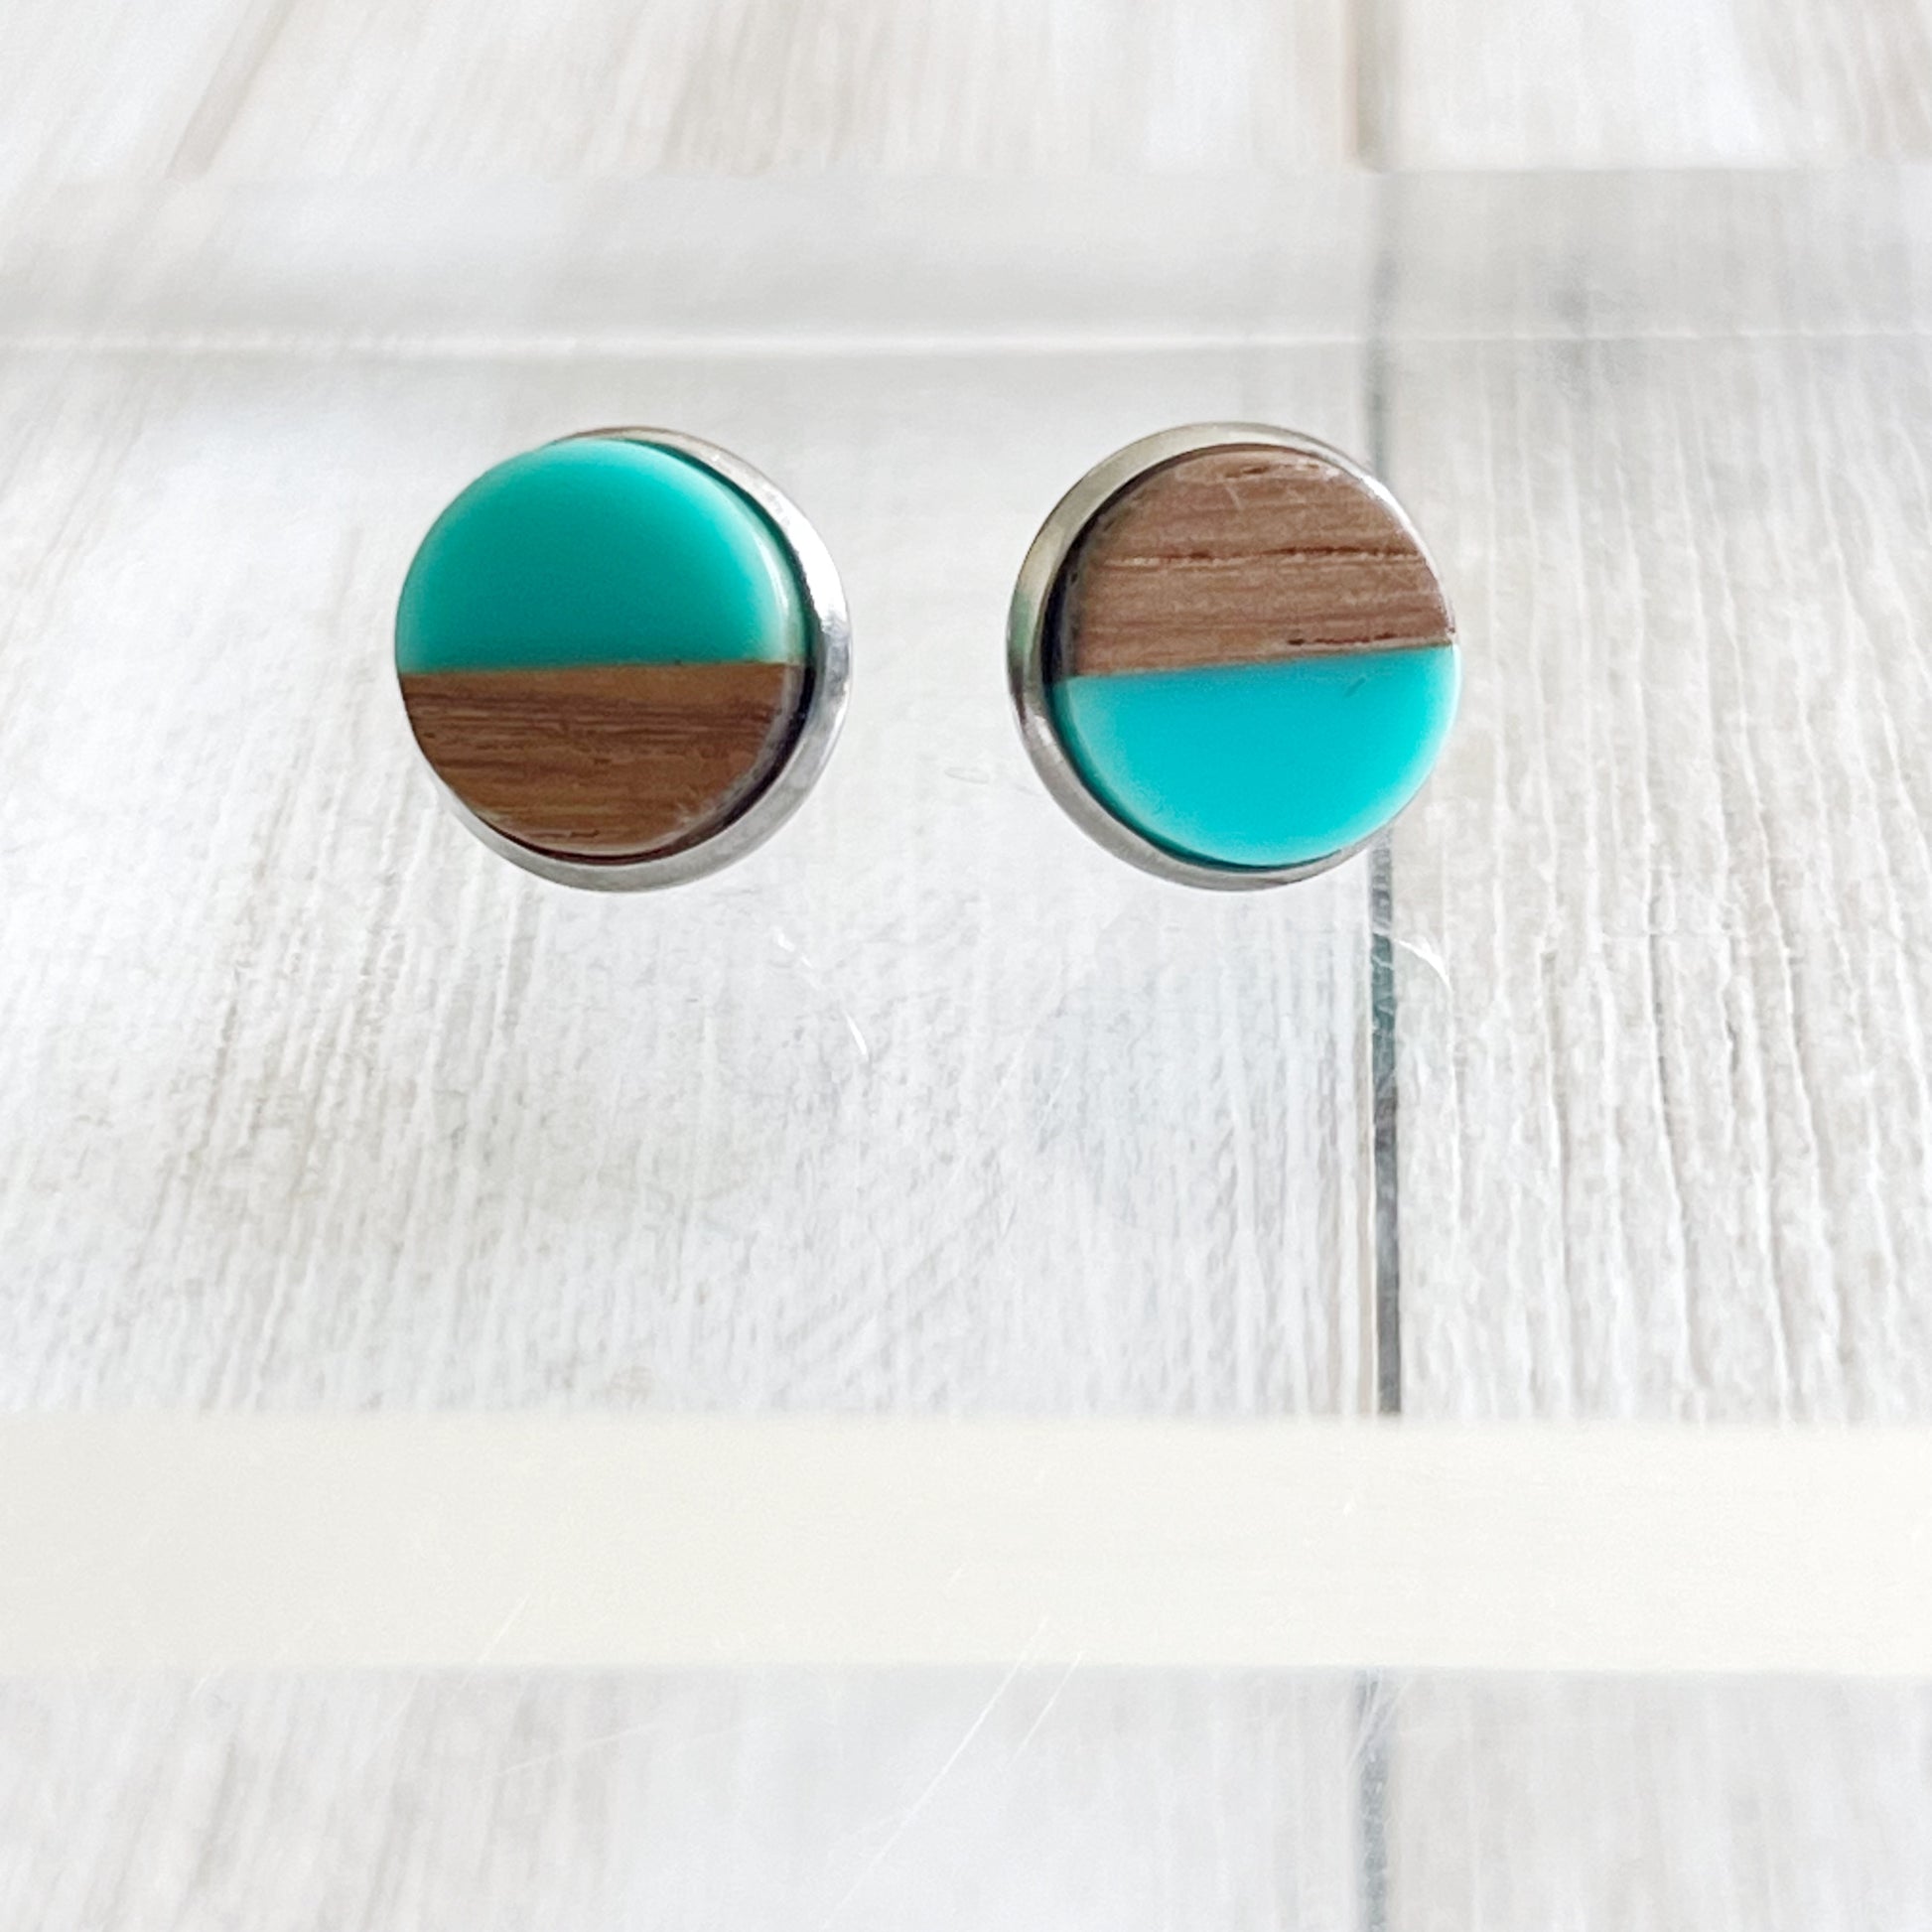 Wood & Teal Resin 10mm Stud Earrings - Natural & Elegant Accessories